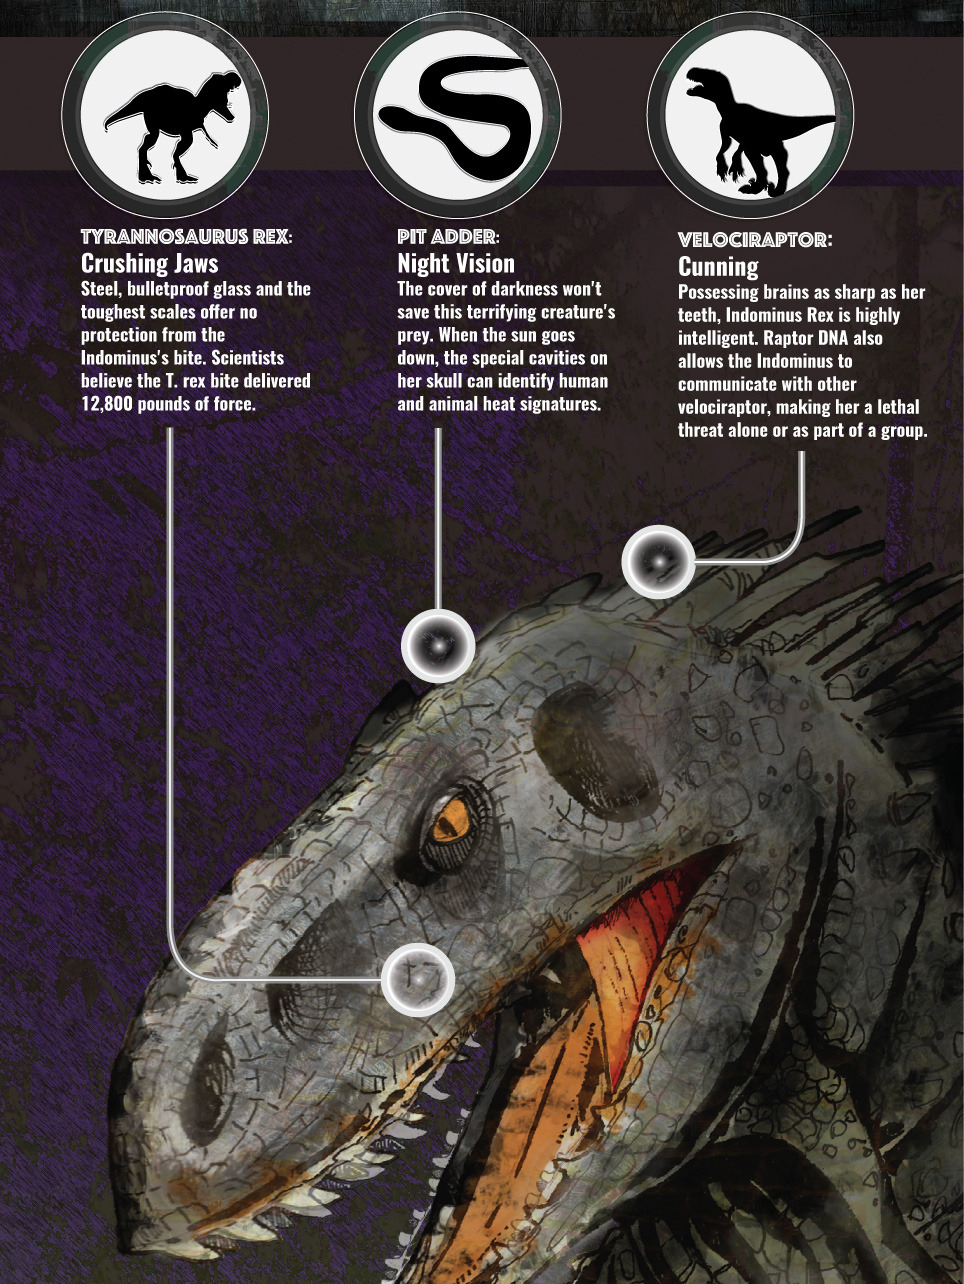 Spoilers: ¿De qué especies tiene ADN el I-Rex? - Página 6 Tumblr_nydu6zoL0R1u506llo2_1280